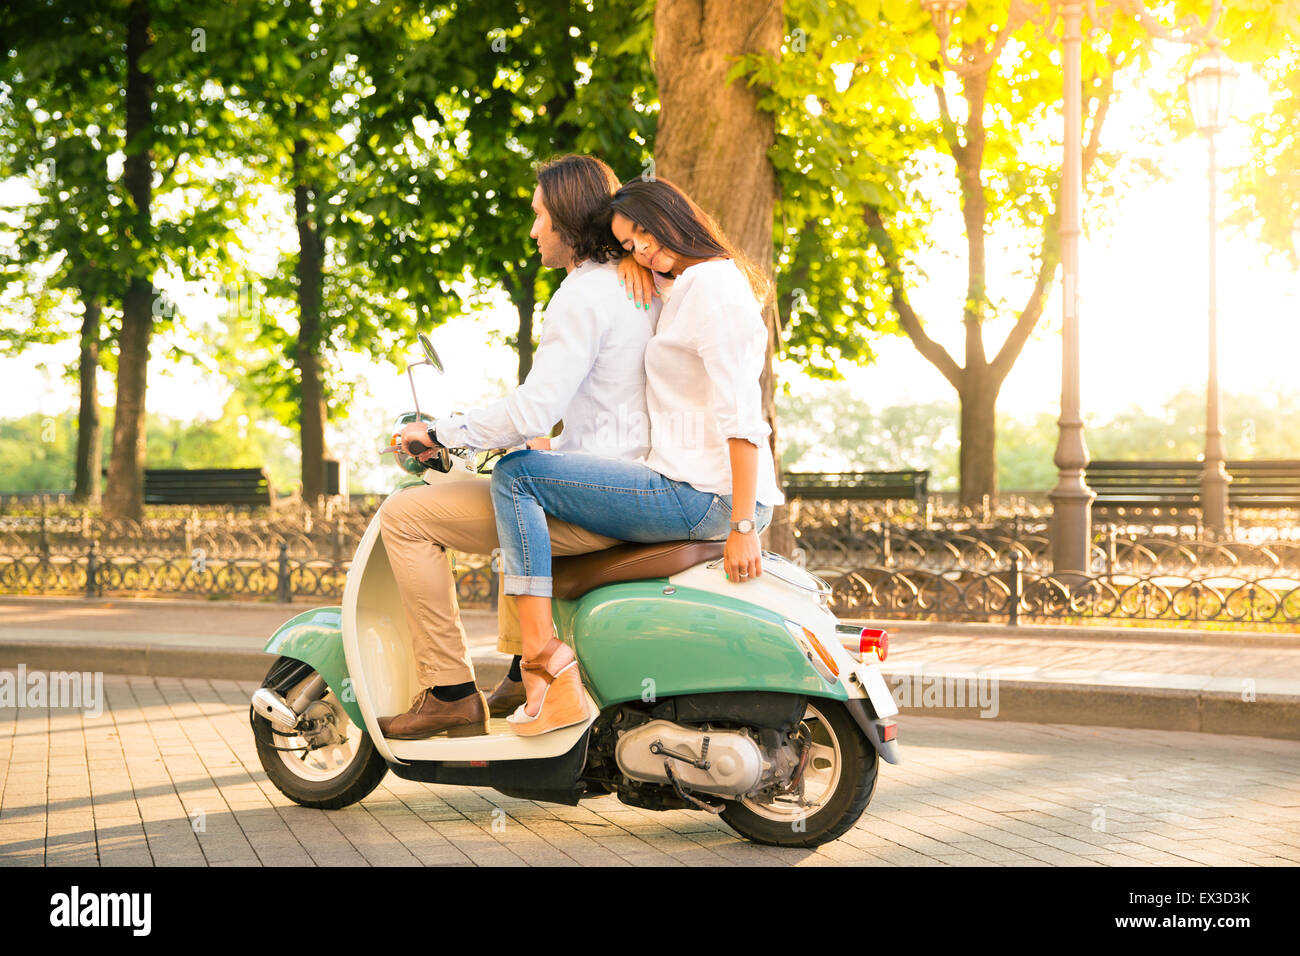 Jeune couple riding a scooter en ville Banque D'Images